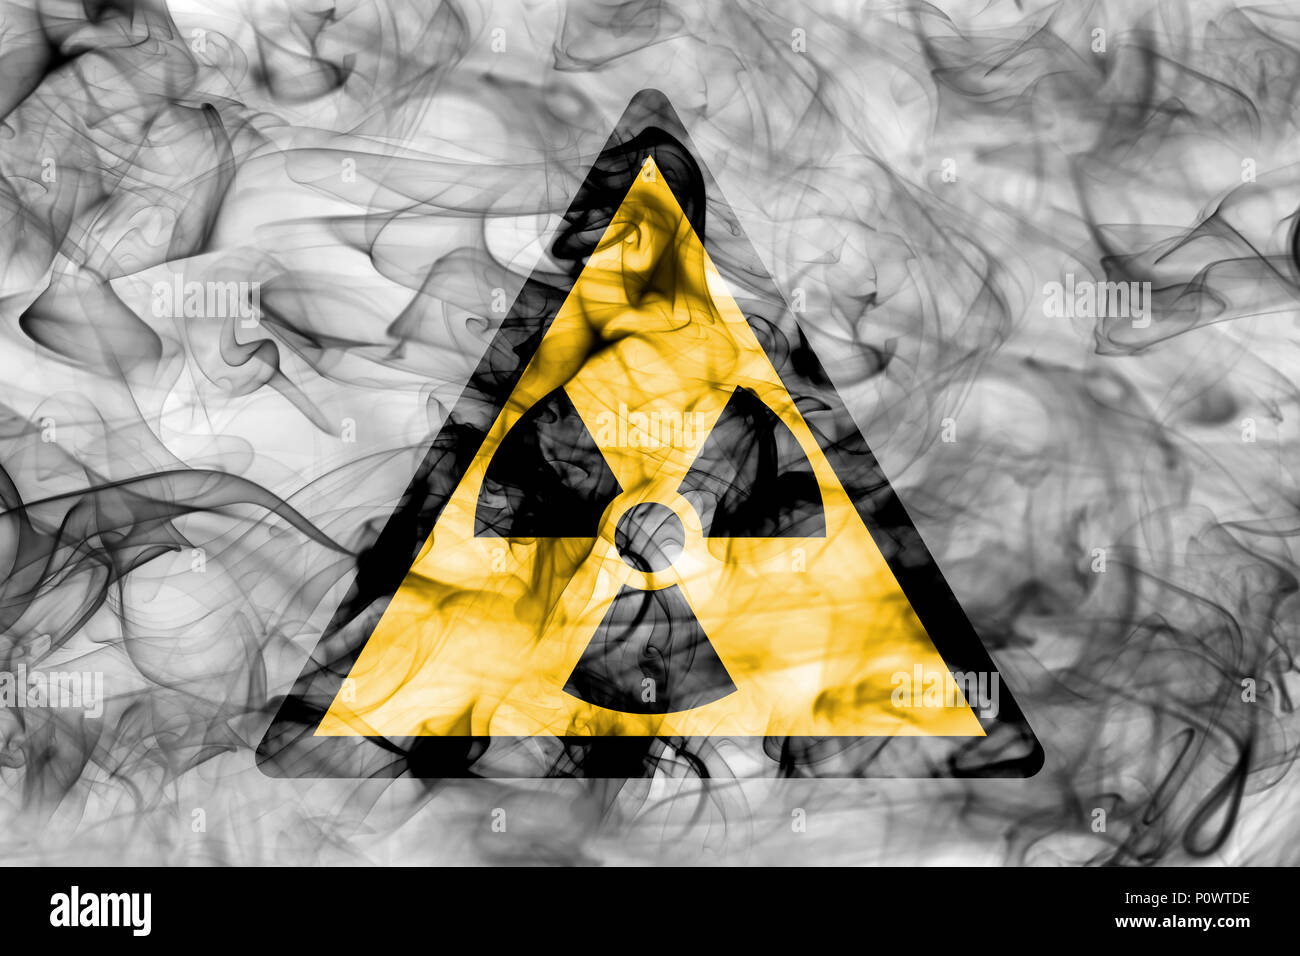 Radioaktive Stoffe oder ionisierende Strahlung Gefahr Warnung Rauch  unterzeichnen. Dreieckige Gefahrenwarnung Zeichen, Rauch Hintergrund  Stockfotografie - Alamy